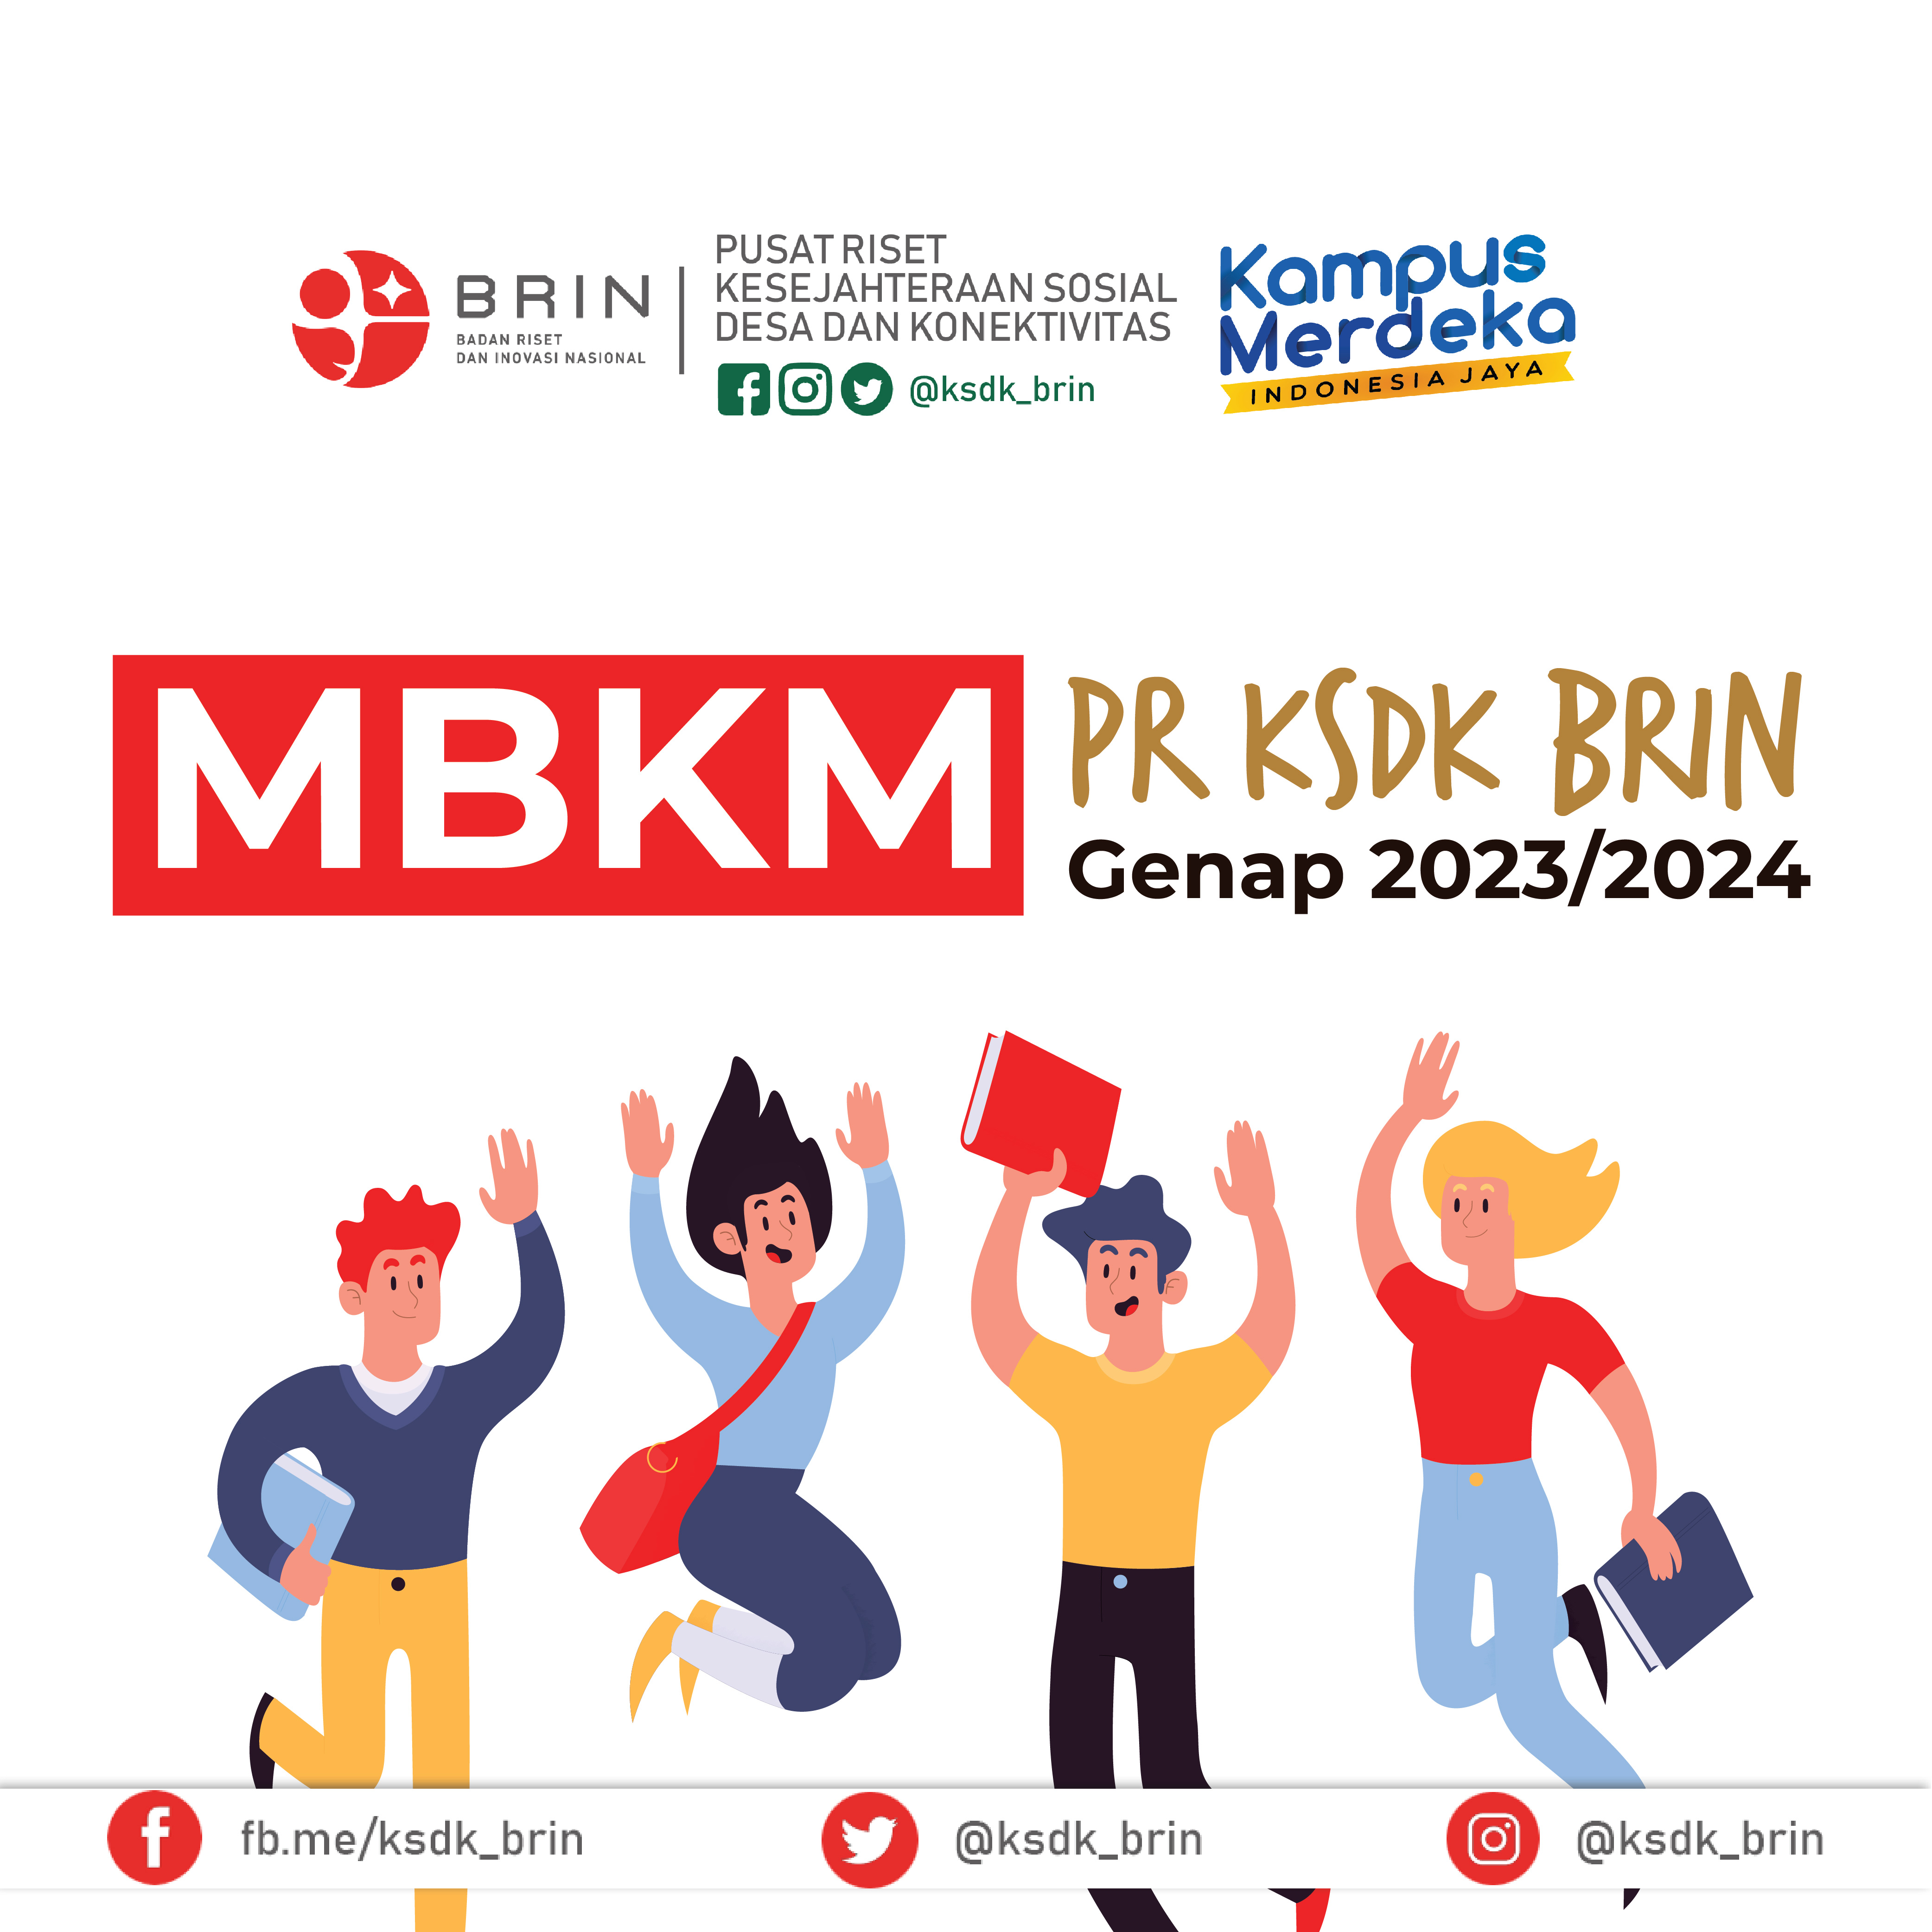 PR KSDK BRIN| Konektivitas Ruang Wilayah| Magang/Praktek Kerja (Non Riset) - Jakarta (Gatot Subroto) 